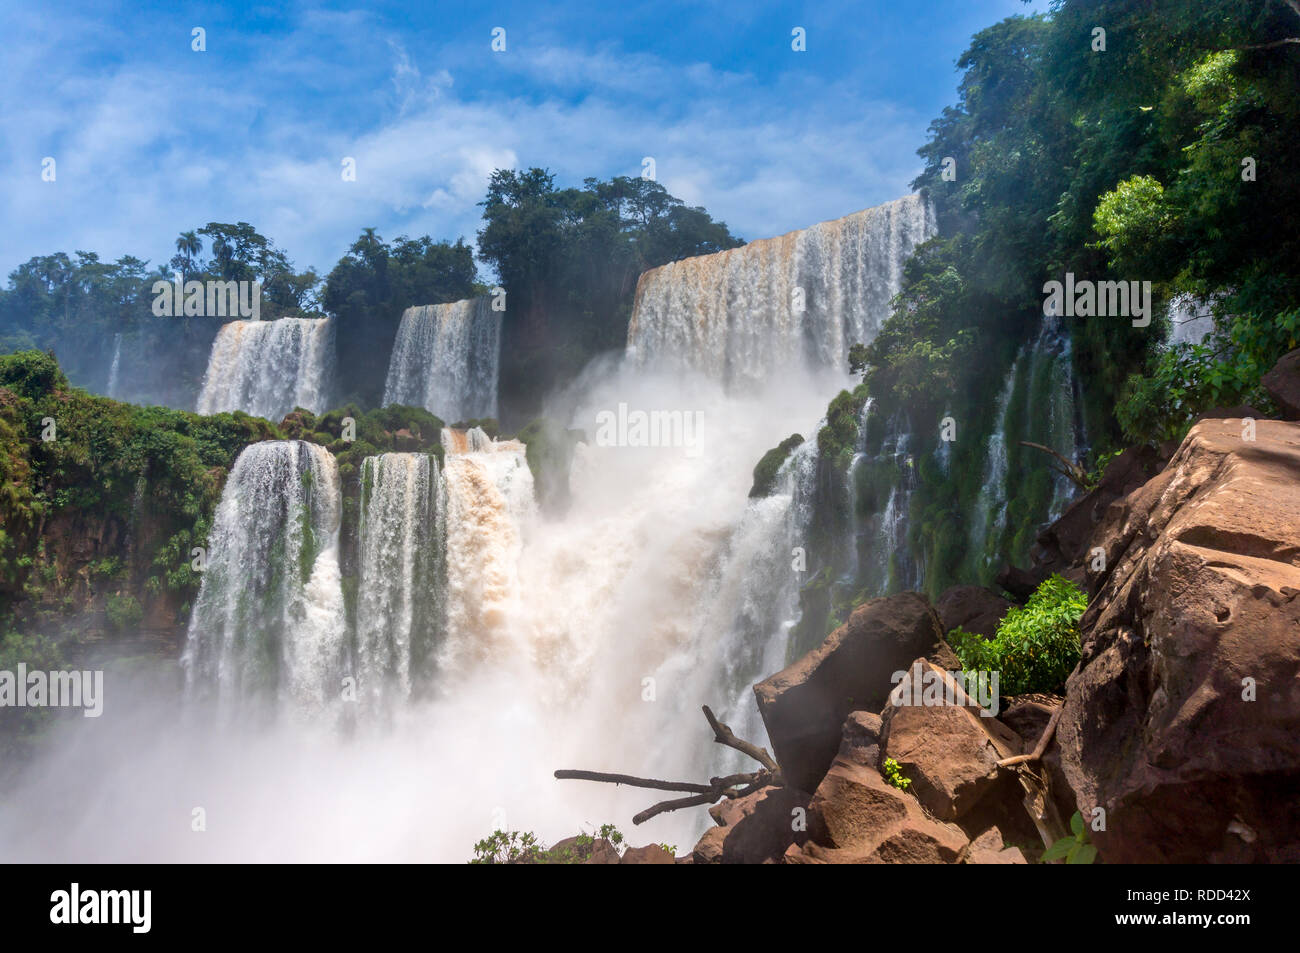 Schönen Wasserfällen von Iguazu Wasserfälle, Argentinischen Seite Stockfoto